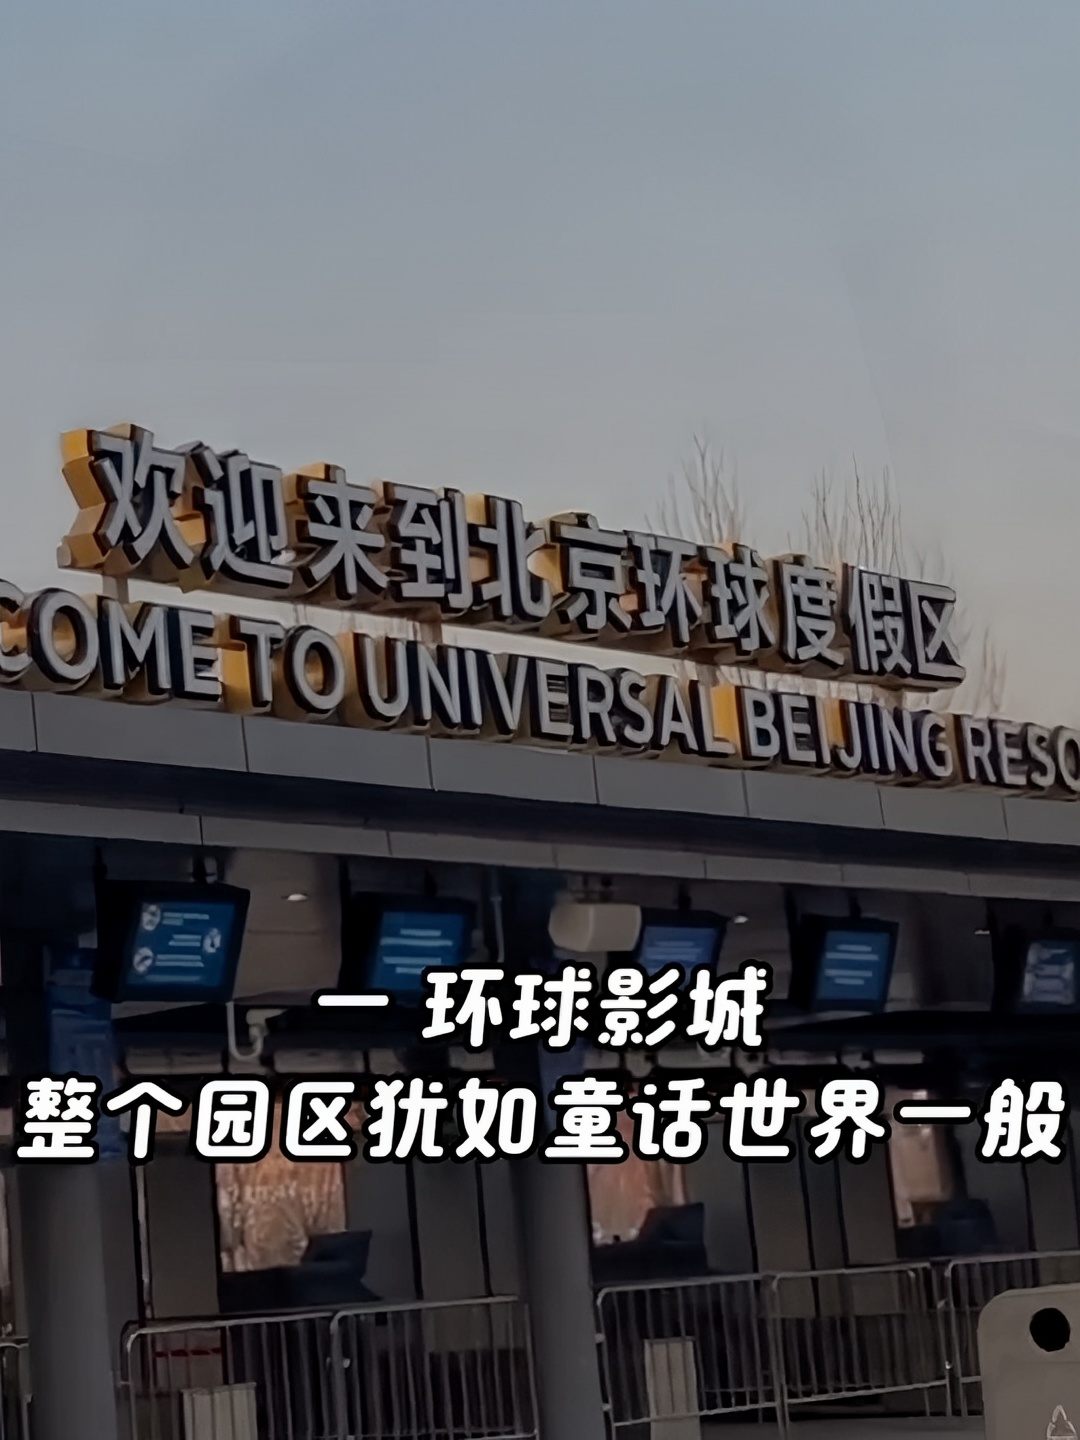 #环球乐园推出首个“春日狂欢”主题活动 北京旅游攻略#北京环球影城抢先打卡